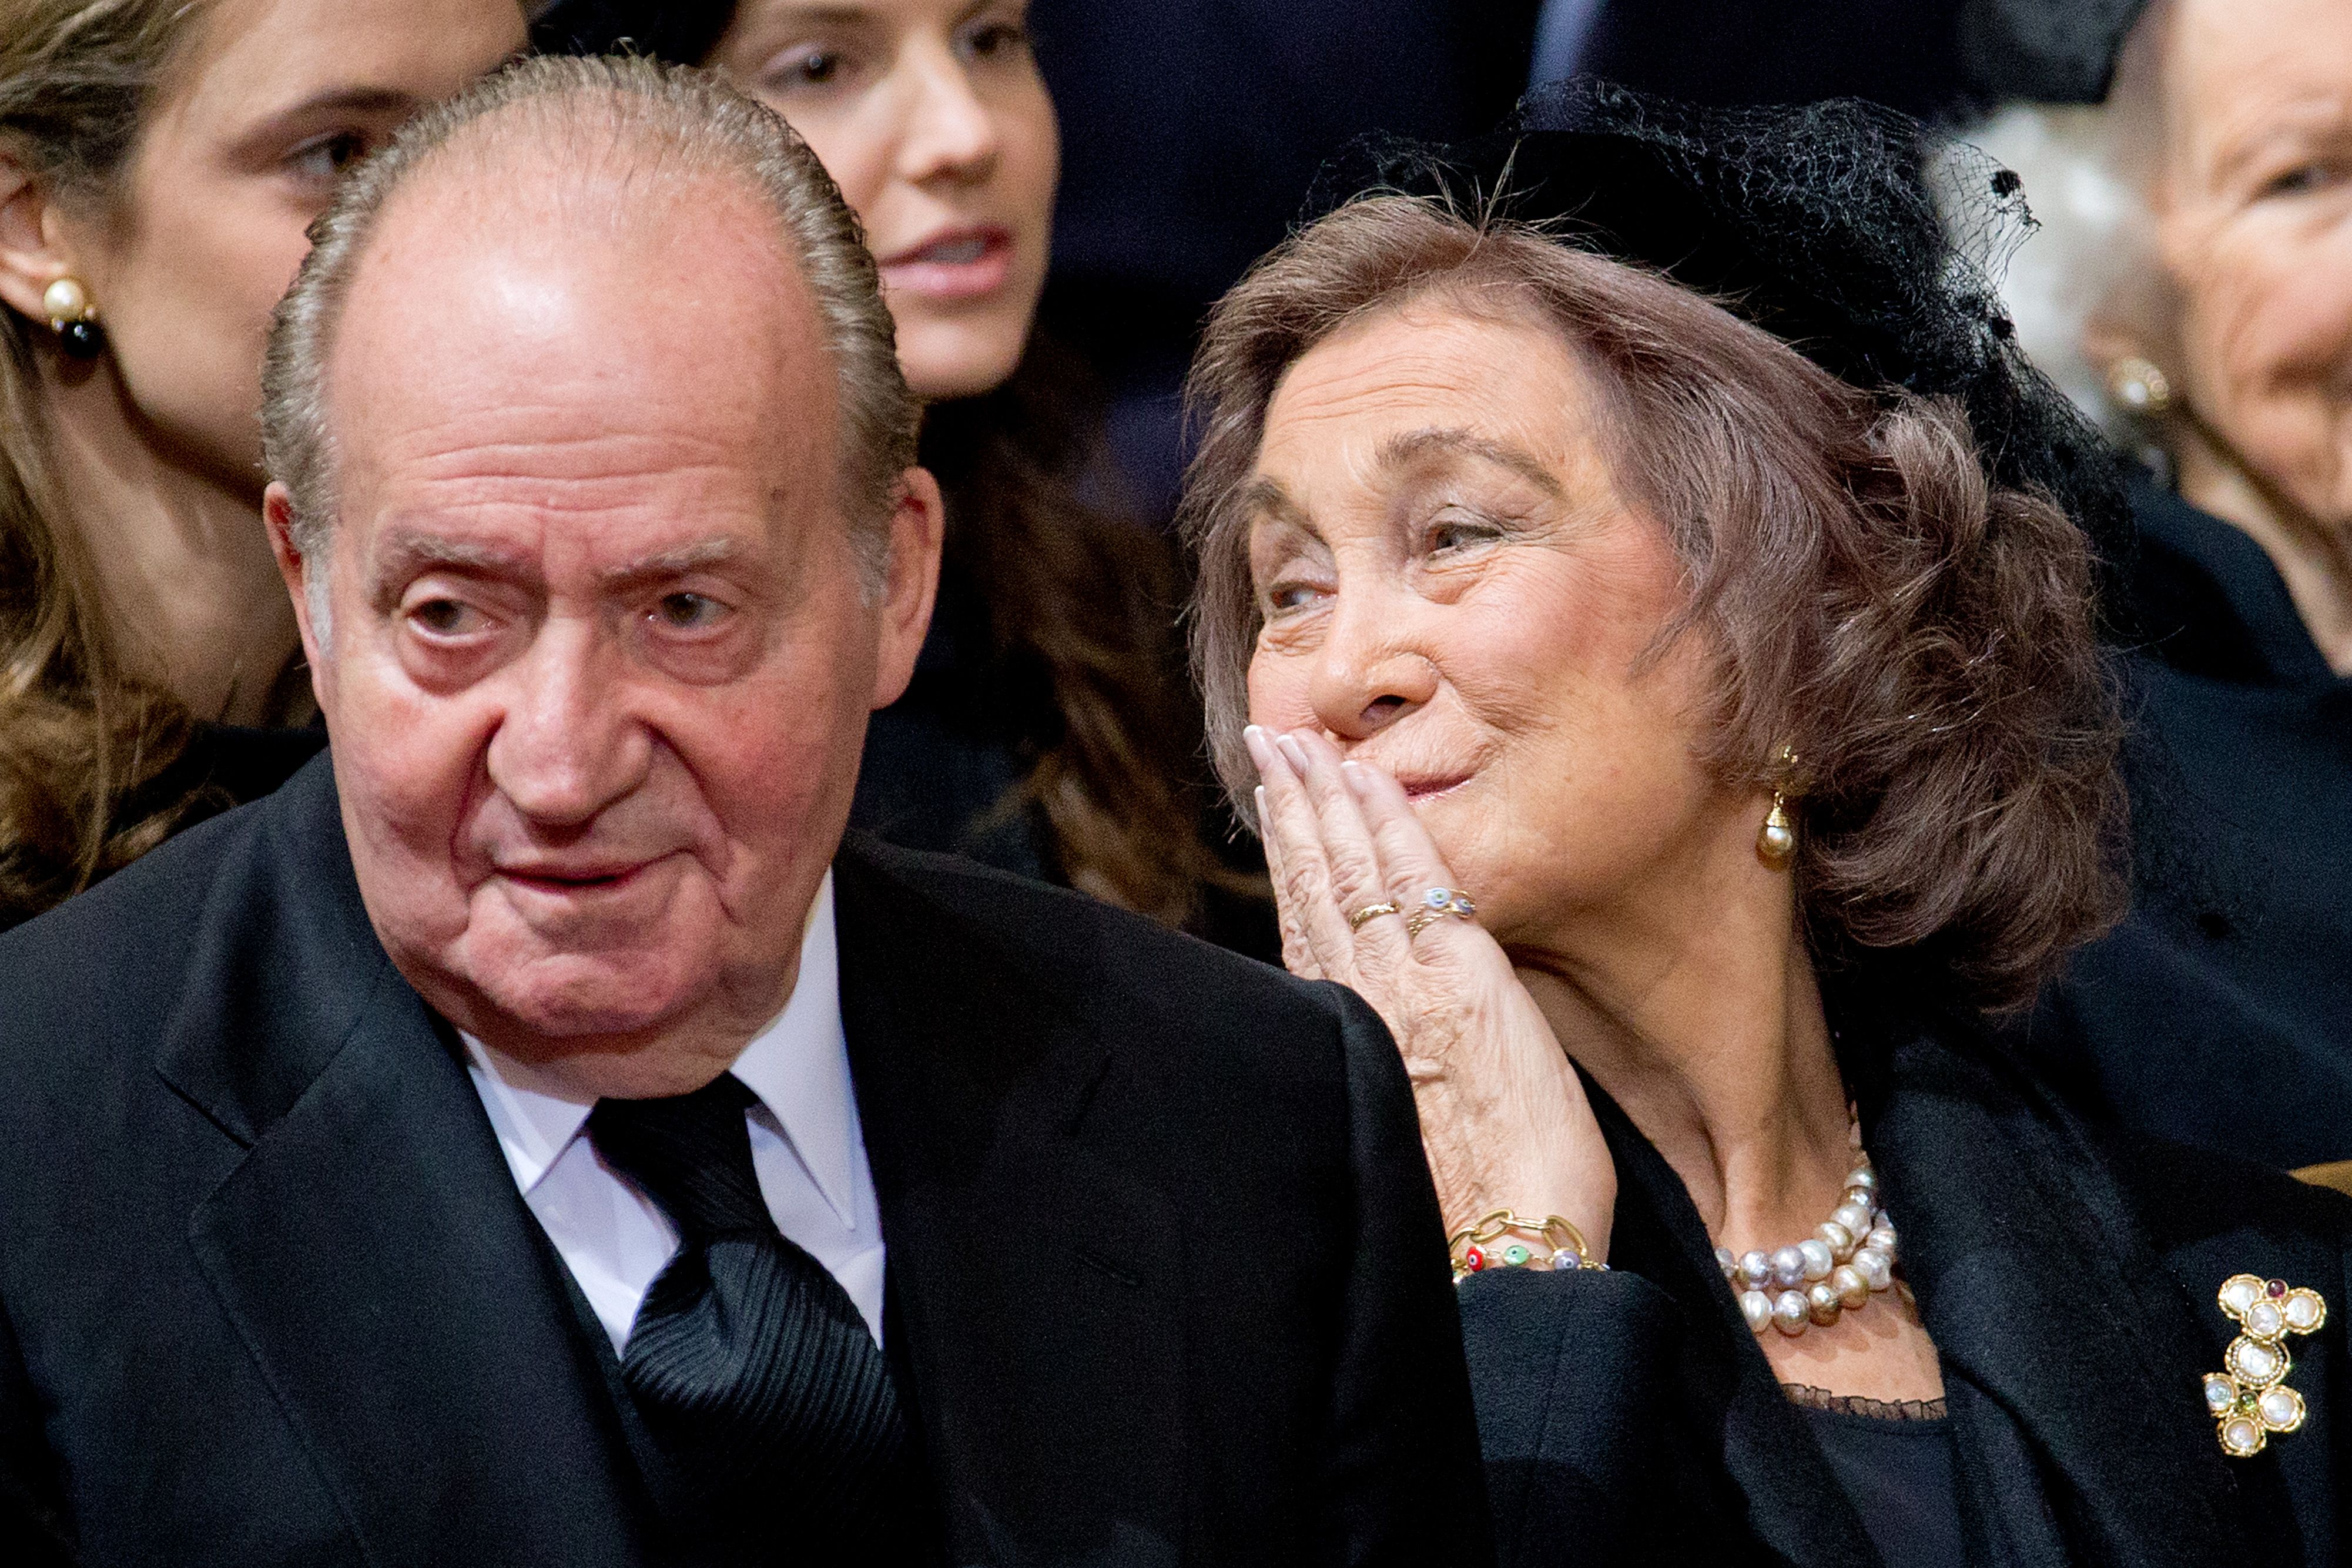 Sofia perdona Joan Carles i ara estan "més units que mai"